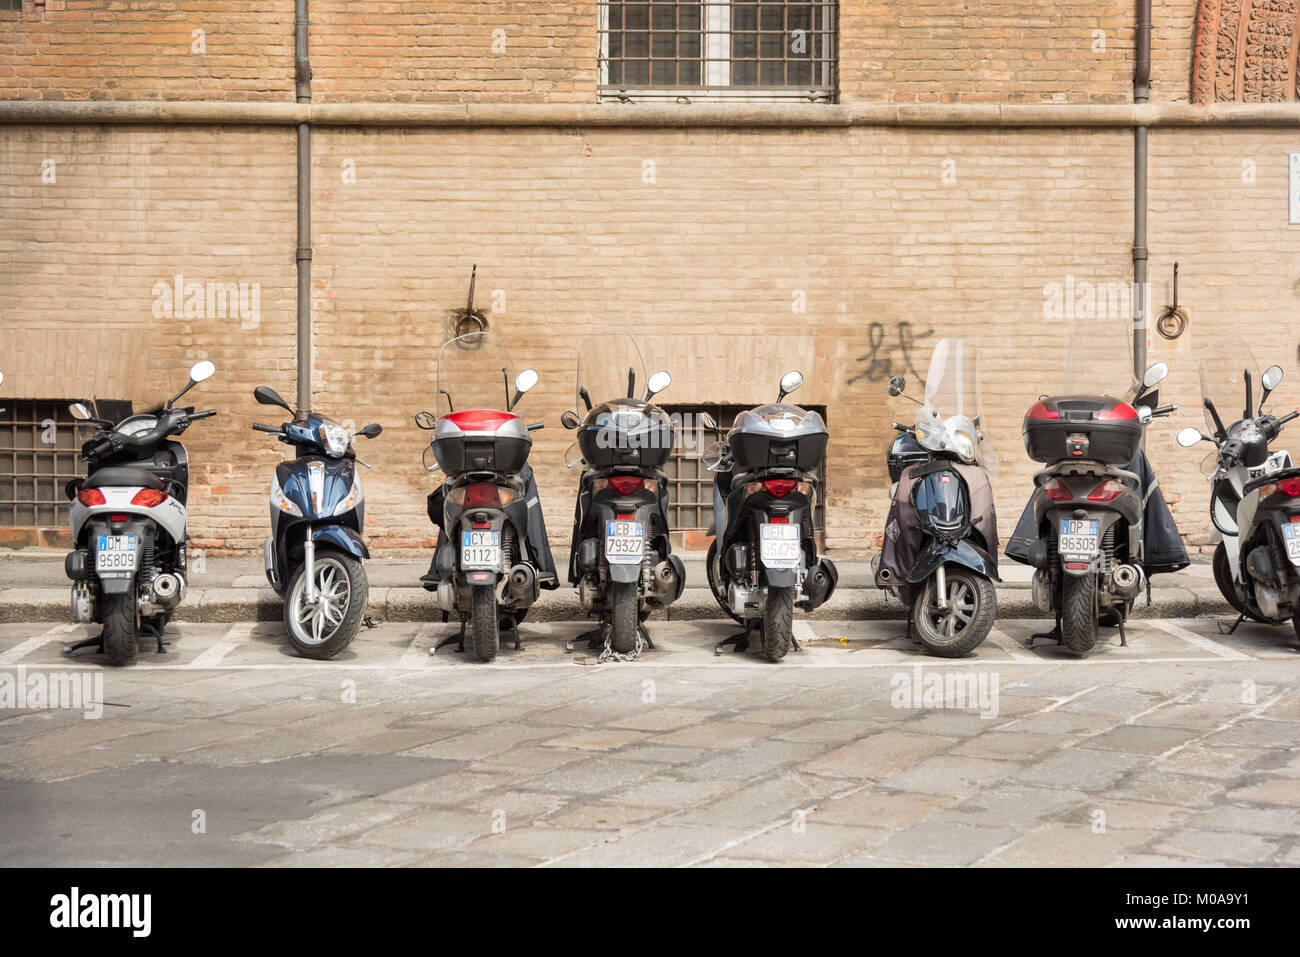 Eine Linie der Italienischen Mopeds, Roller und Motorräder in einer Linie auf einer Straße in Bologna Italien geparkt. Eine typische italienische Szene Stockfoto